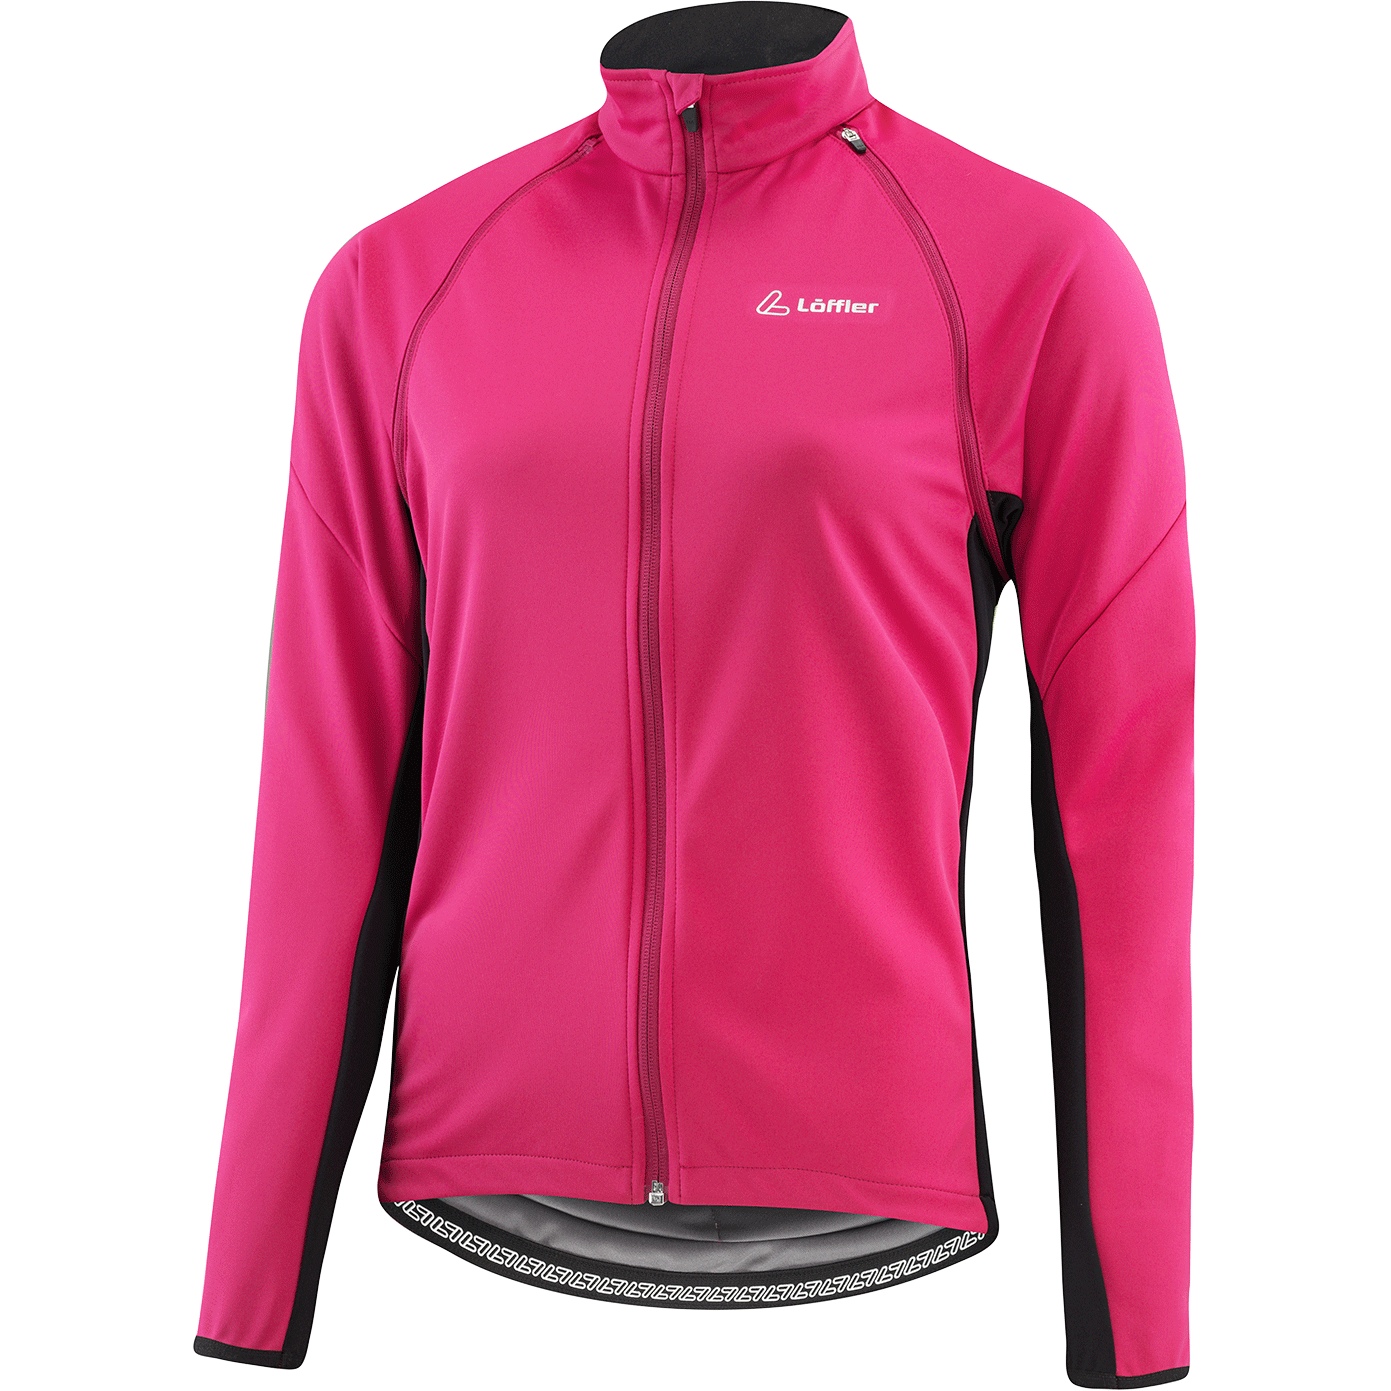 Produktbild von Löffler Zip-Off San Remo 2 Windstopper® Light Bike Jacke Damen - magenta 545